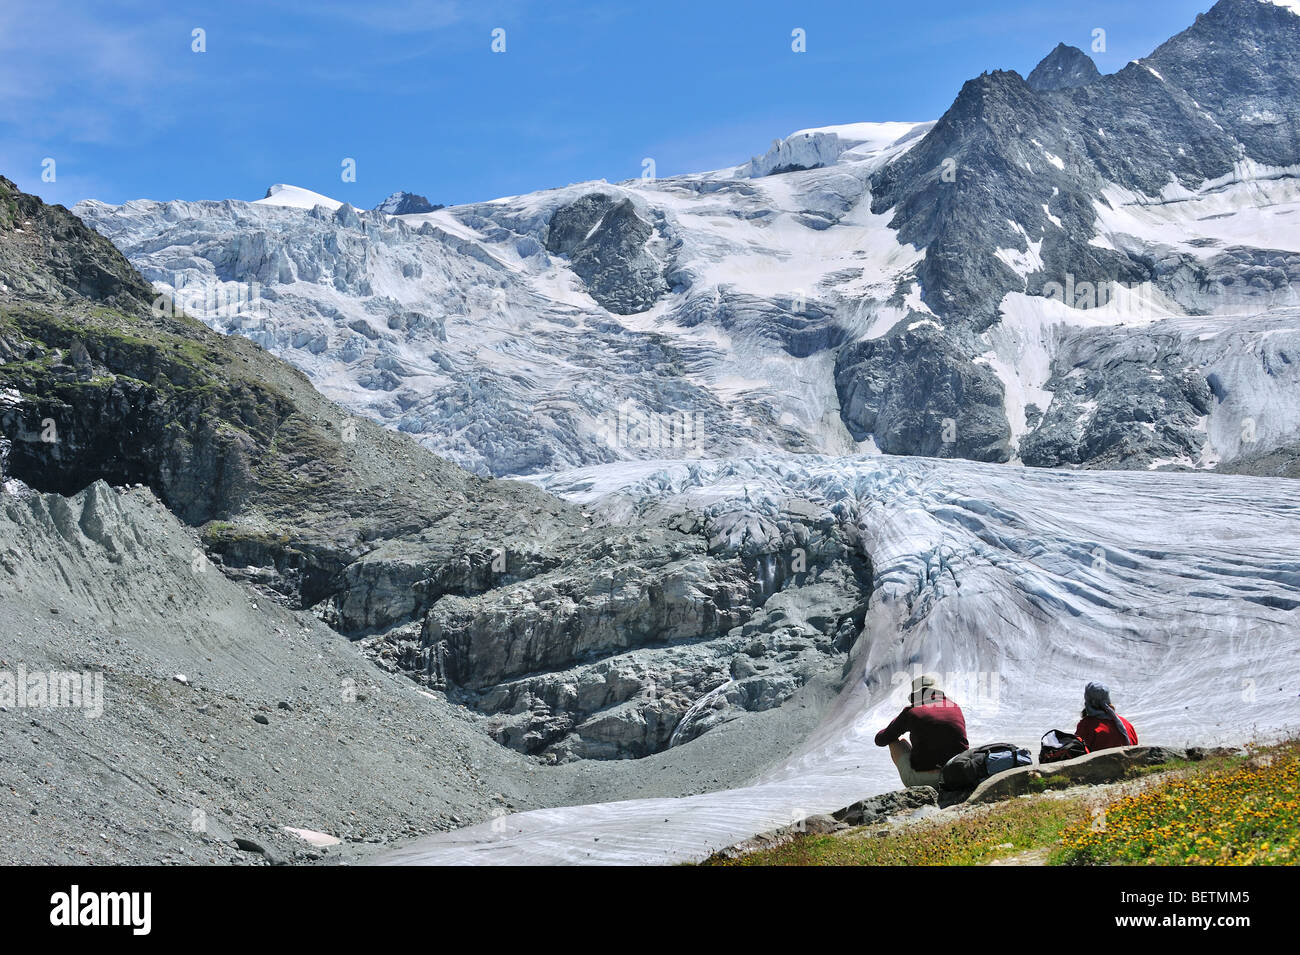 Les marcheurs / les randonneurs se reposant avec vue sur le glacier de Moiry dans les Alpes Pennines / Walliser Alpen, Valais / Wallis (Suisse) Banque D'Images